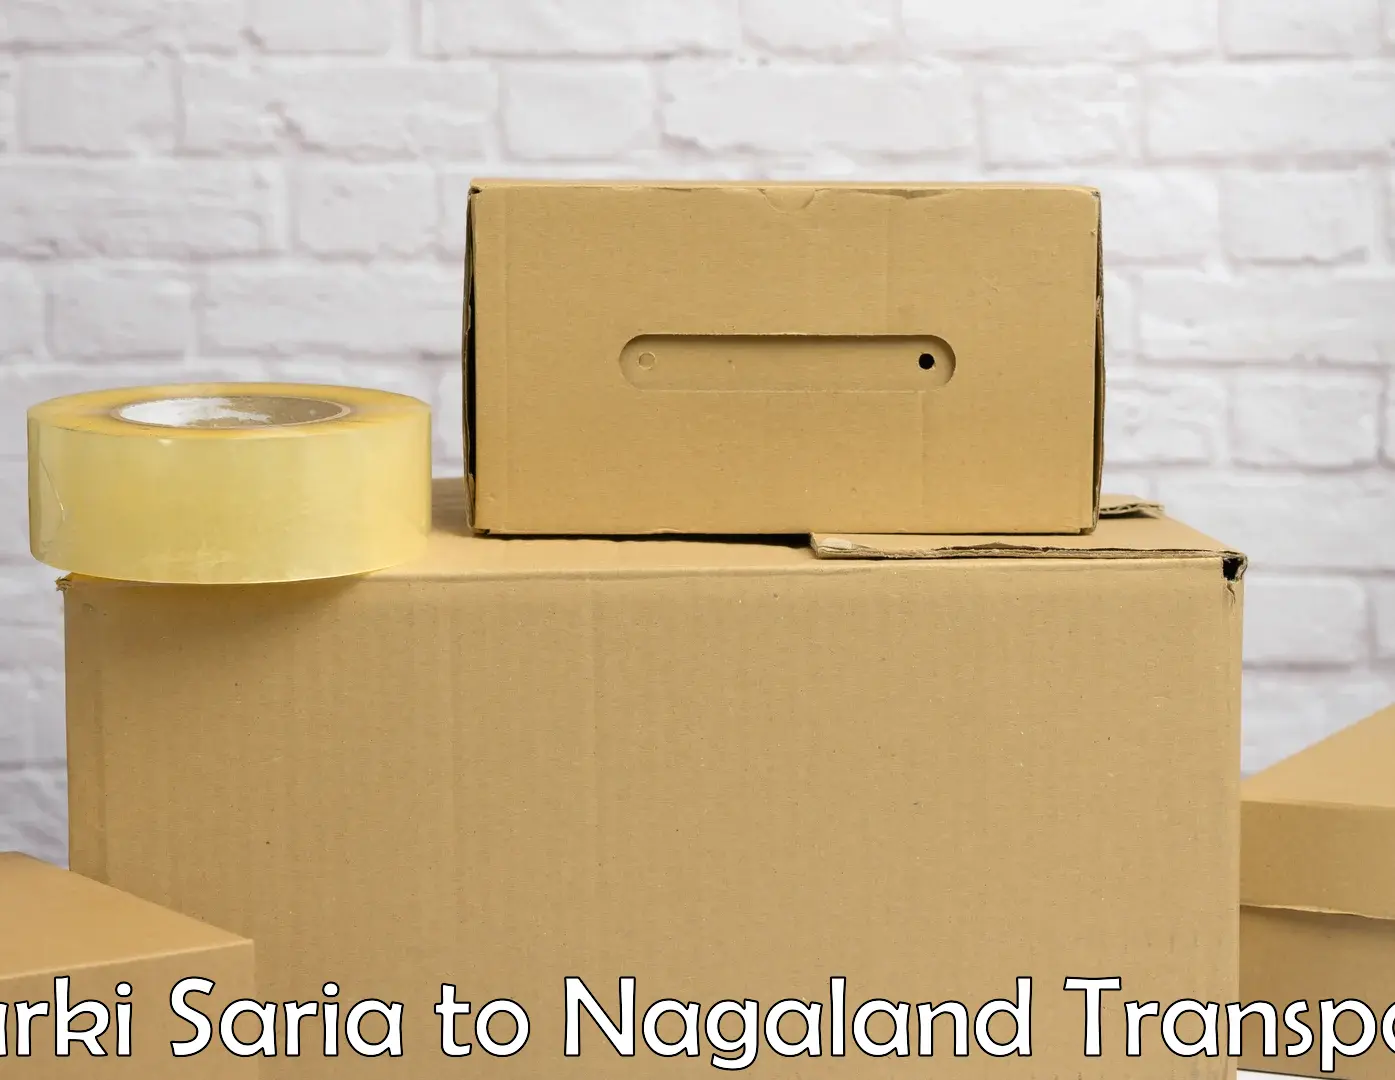 Container transport service Barki Saria to Nagaland